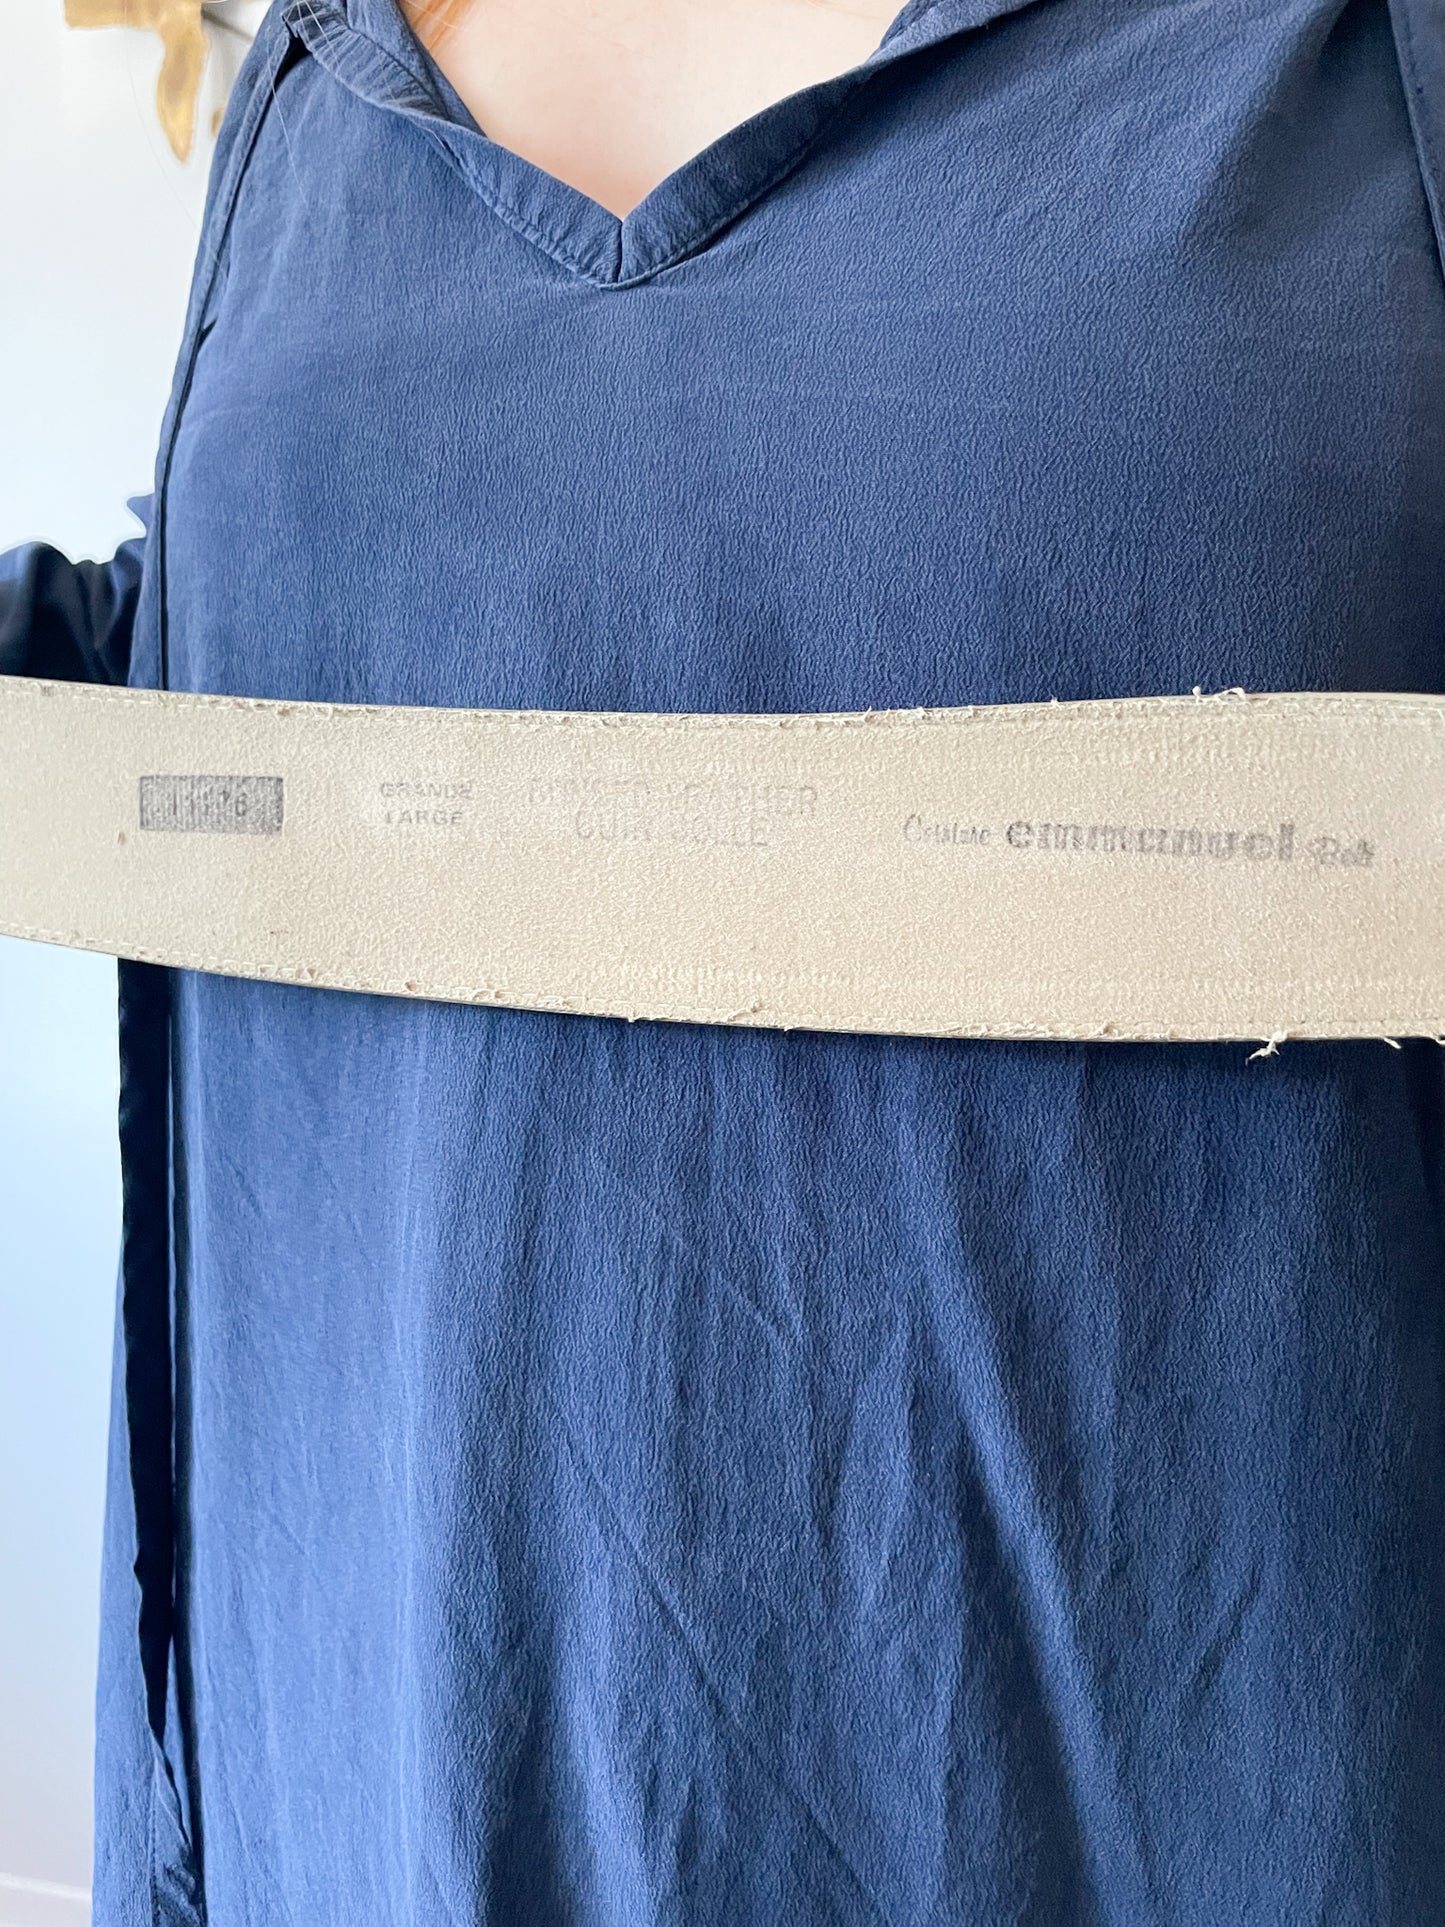 Emmanuel Vintage Leather Sage Taupe Asymmetrical Belt - S/M